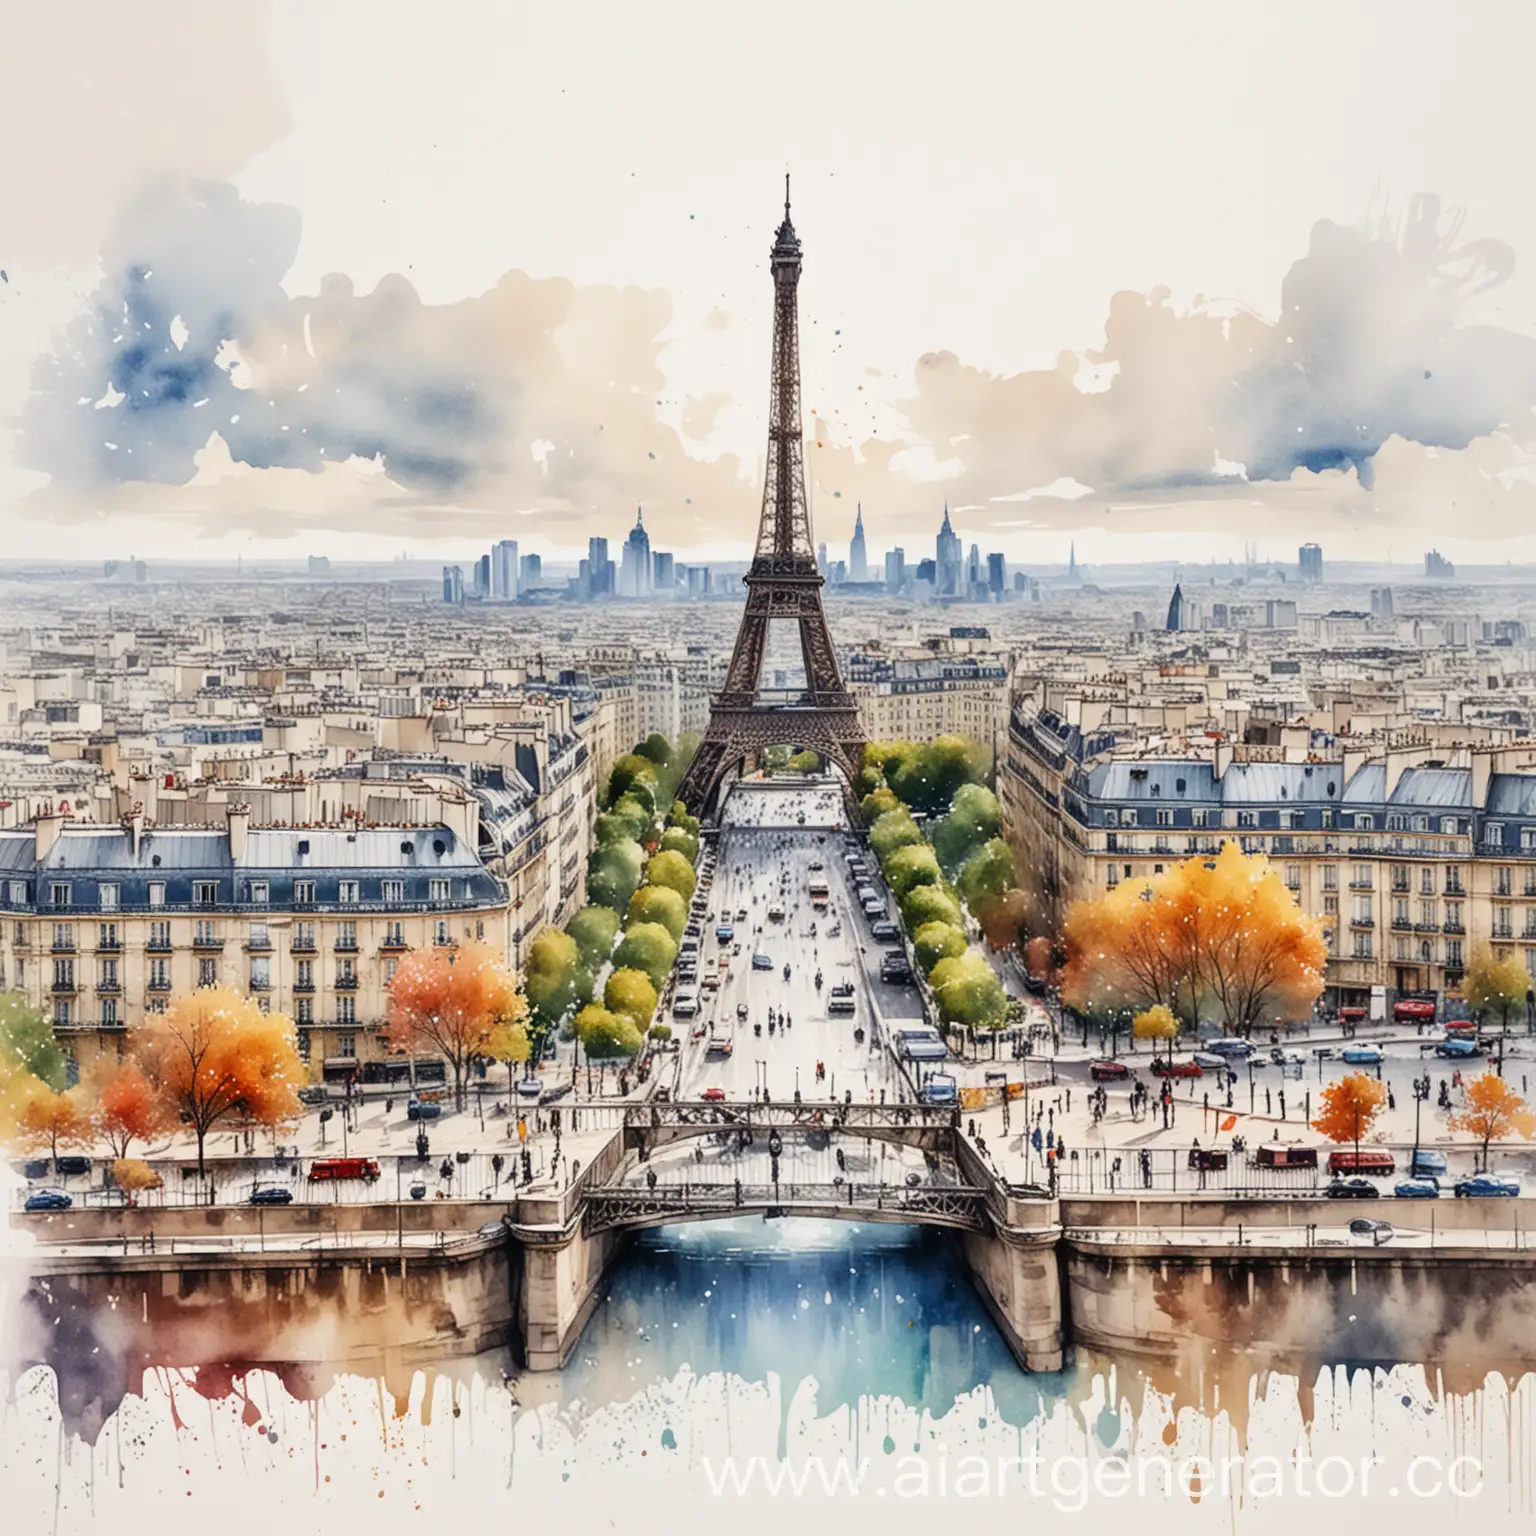 акварельный красочный рисунок панорамы парижа с эйфелевой башней с брызгами и неровными краями на белом фоне